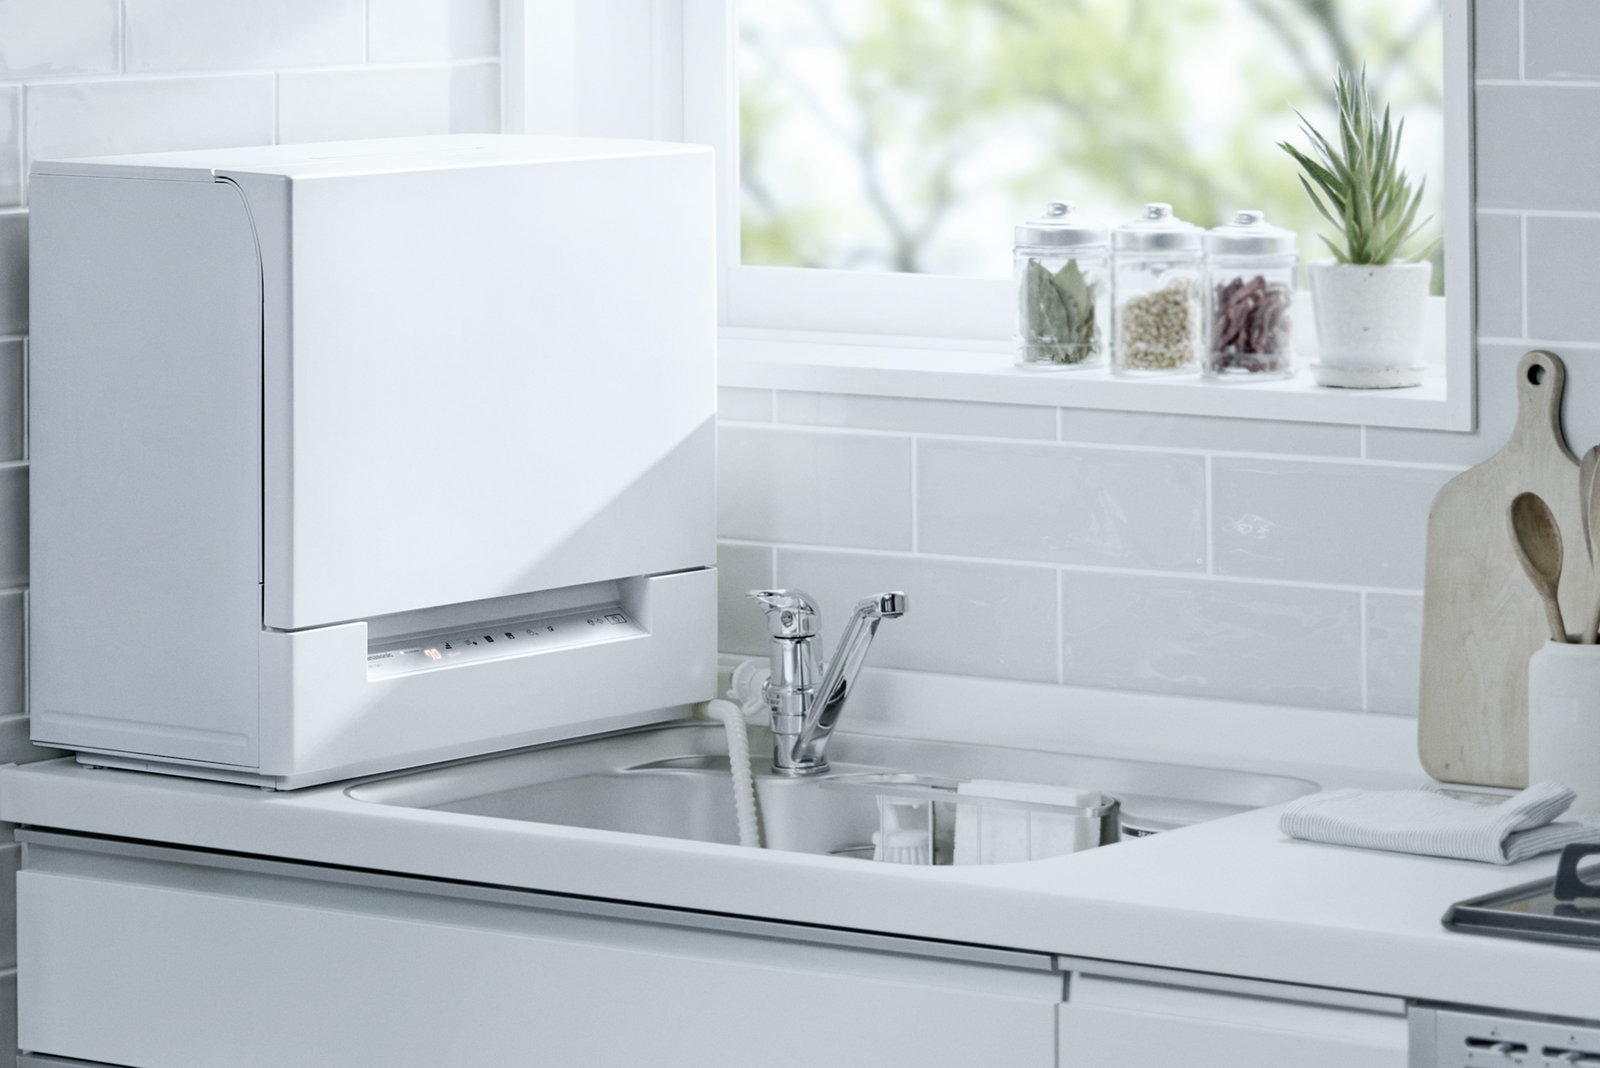 卓上型食器洗い乾燥機「スリム食洗機」NP-TSK1 他1機種を発売 